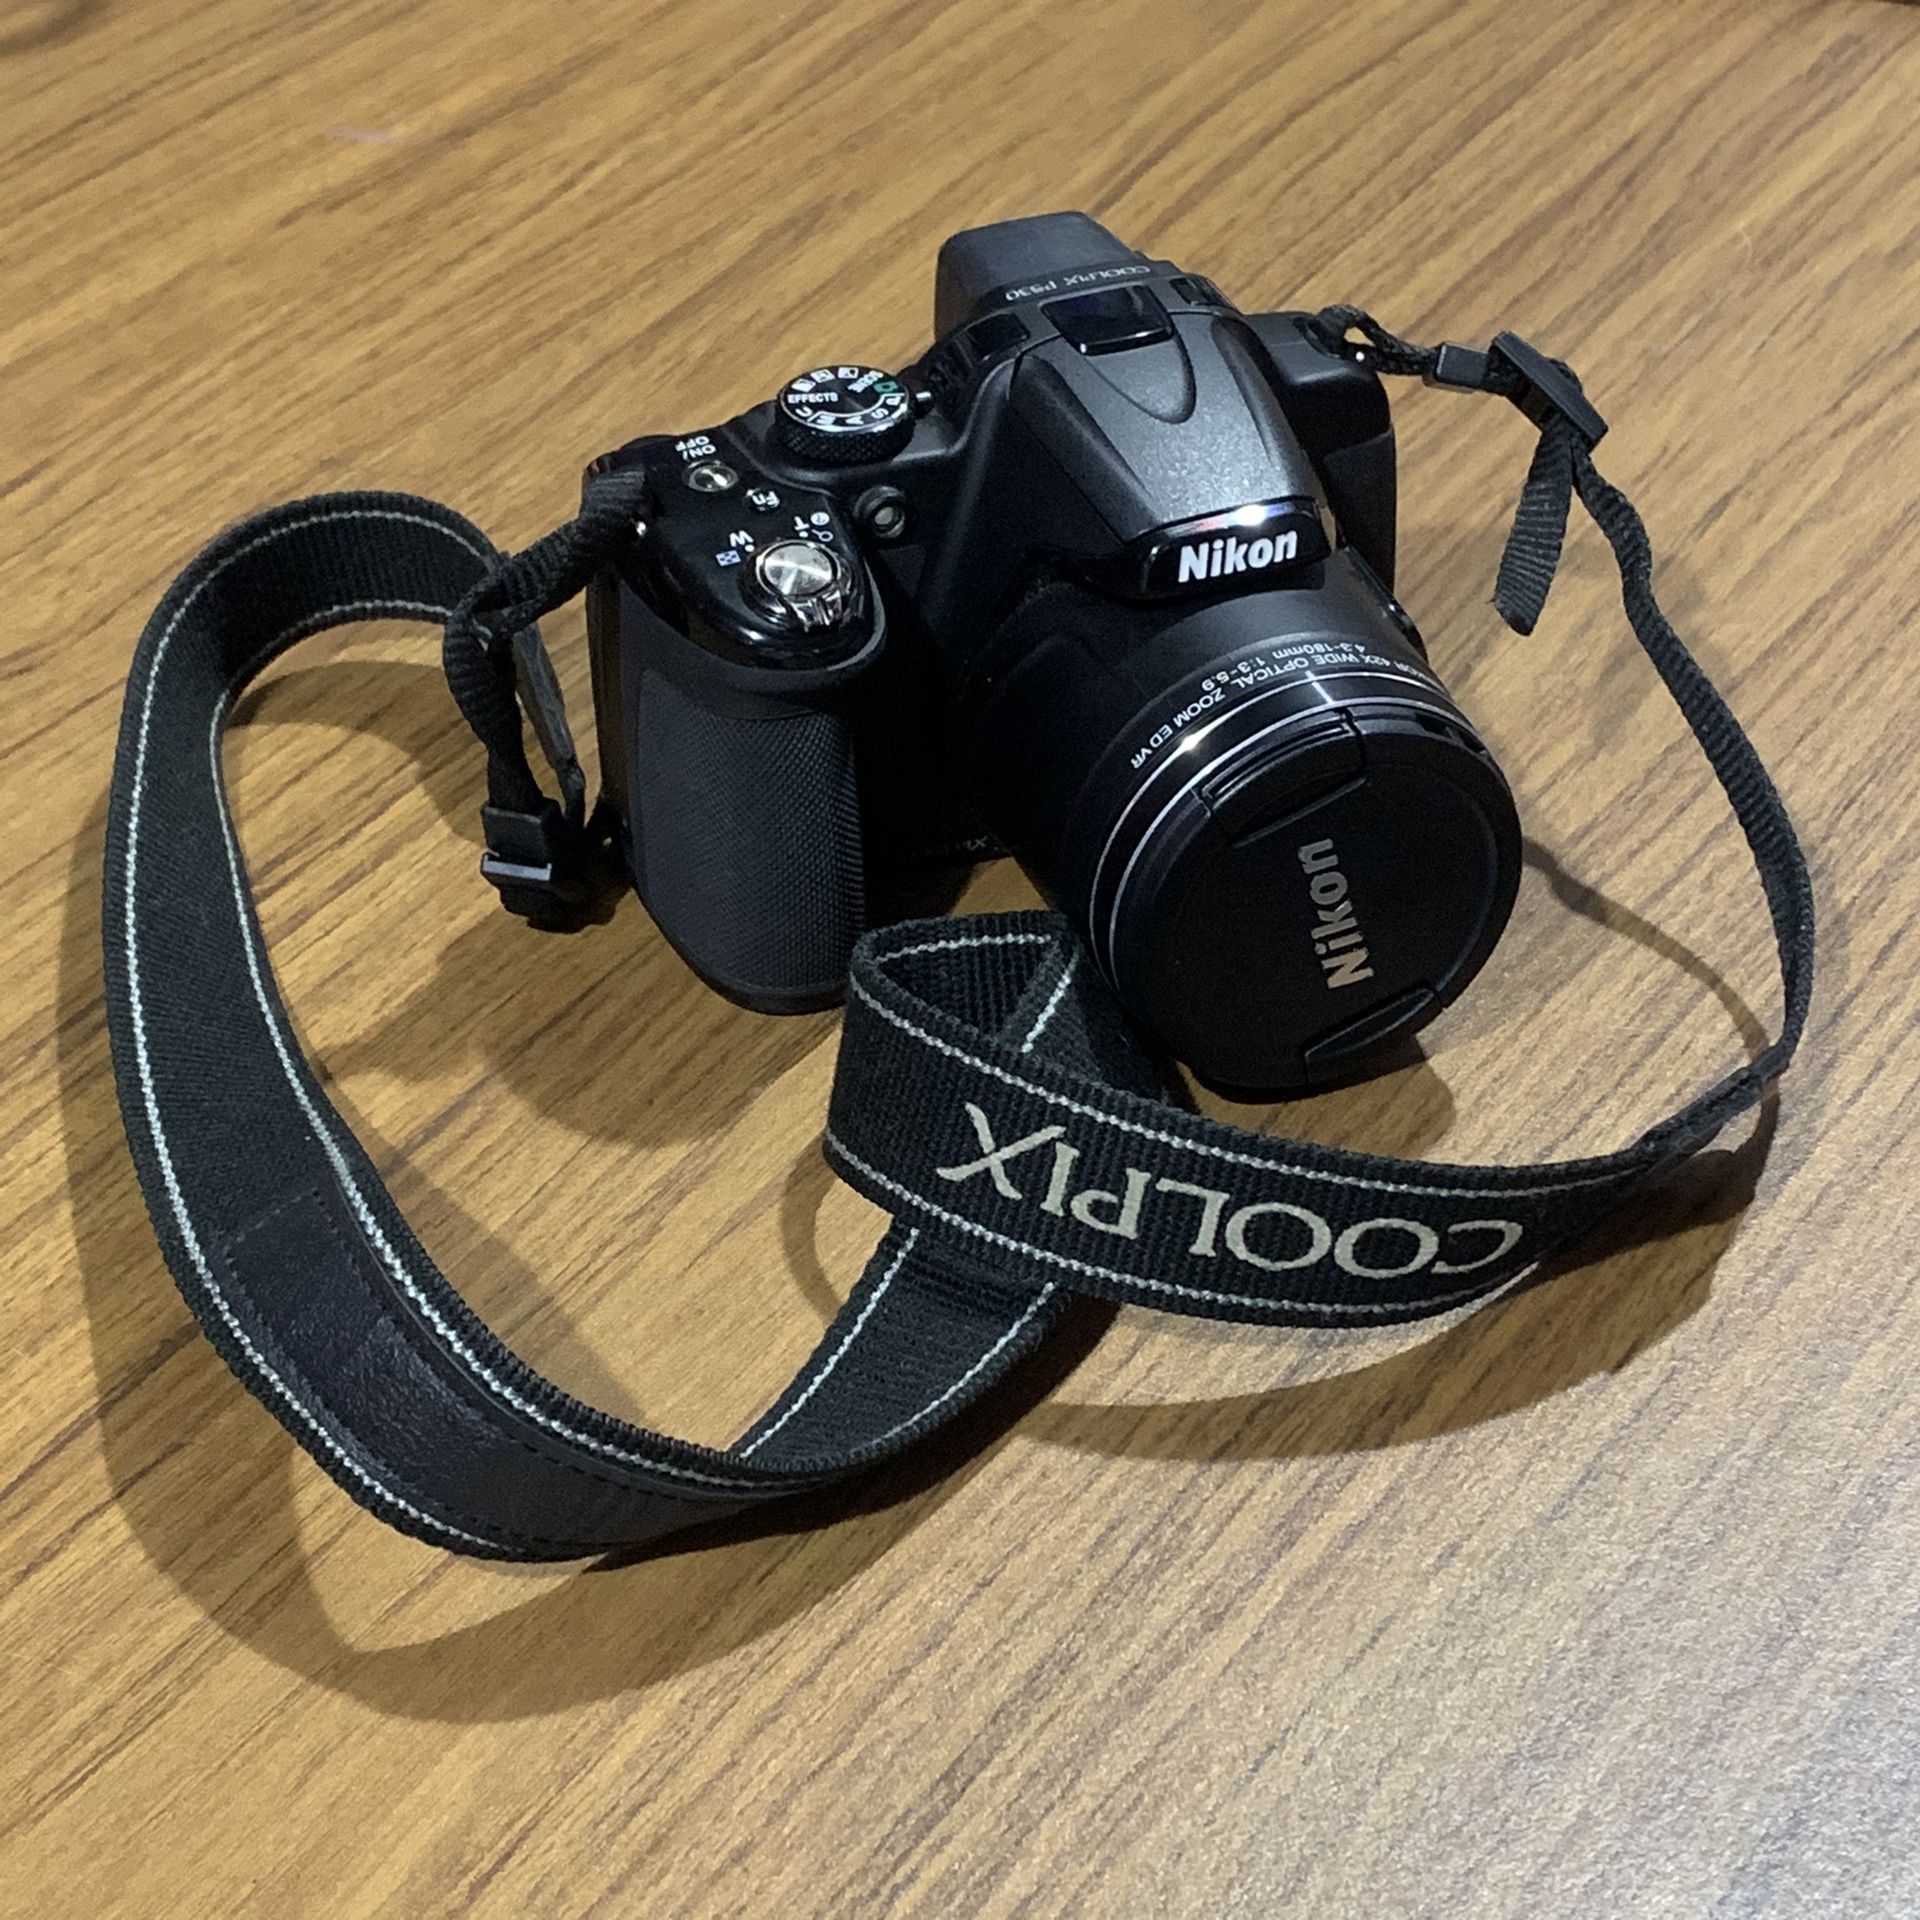 Nikon Coolpix p530 42x super zoom camera